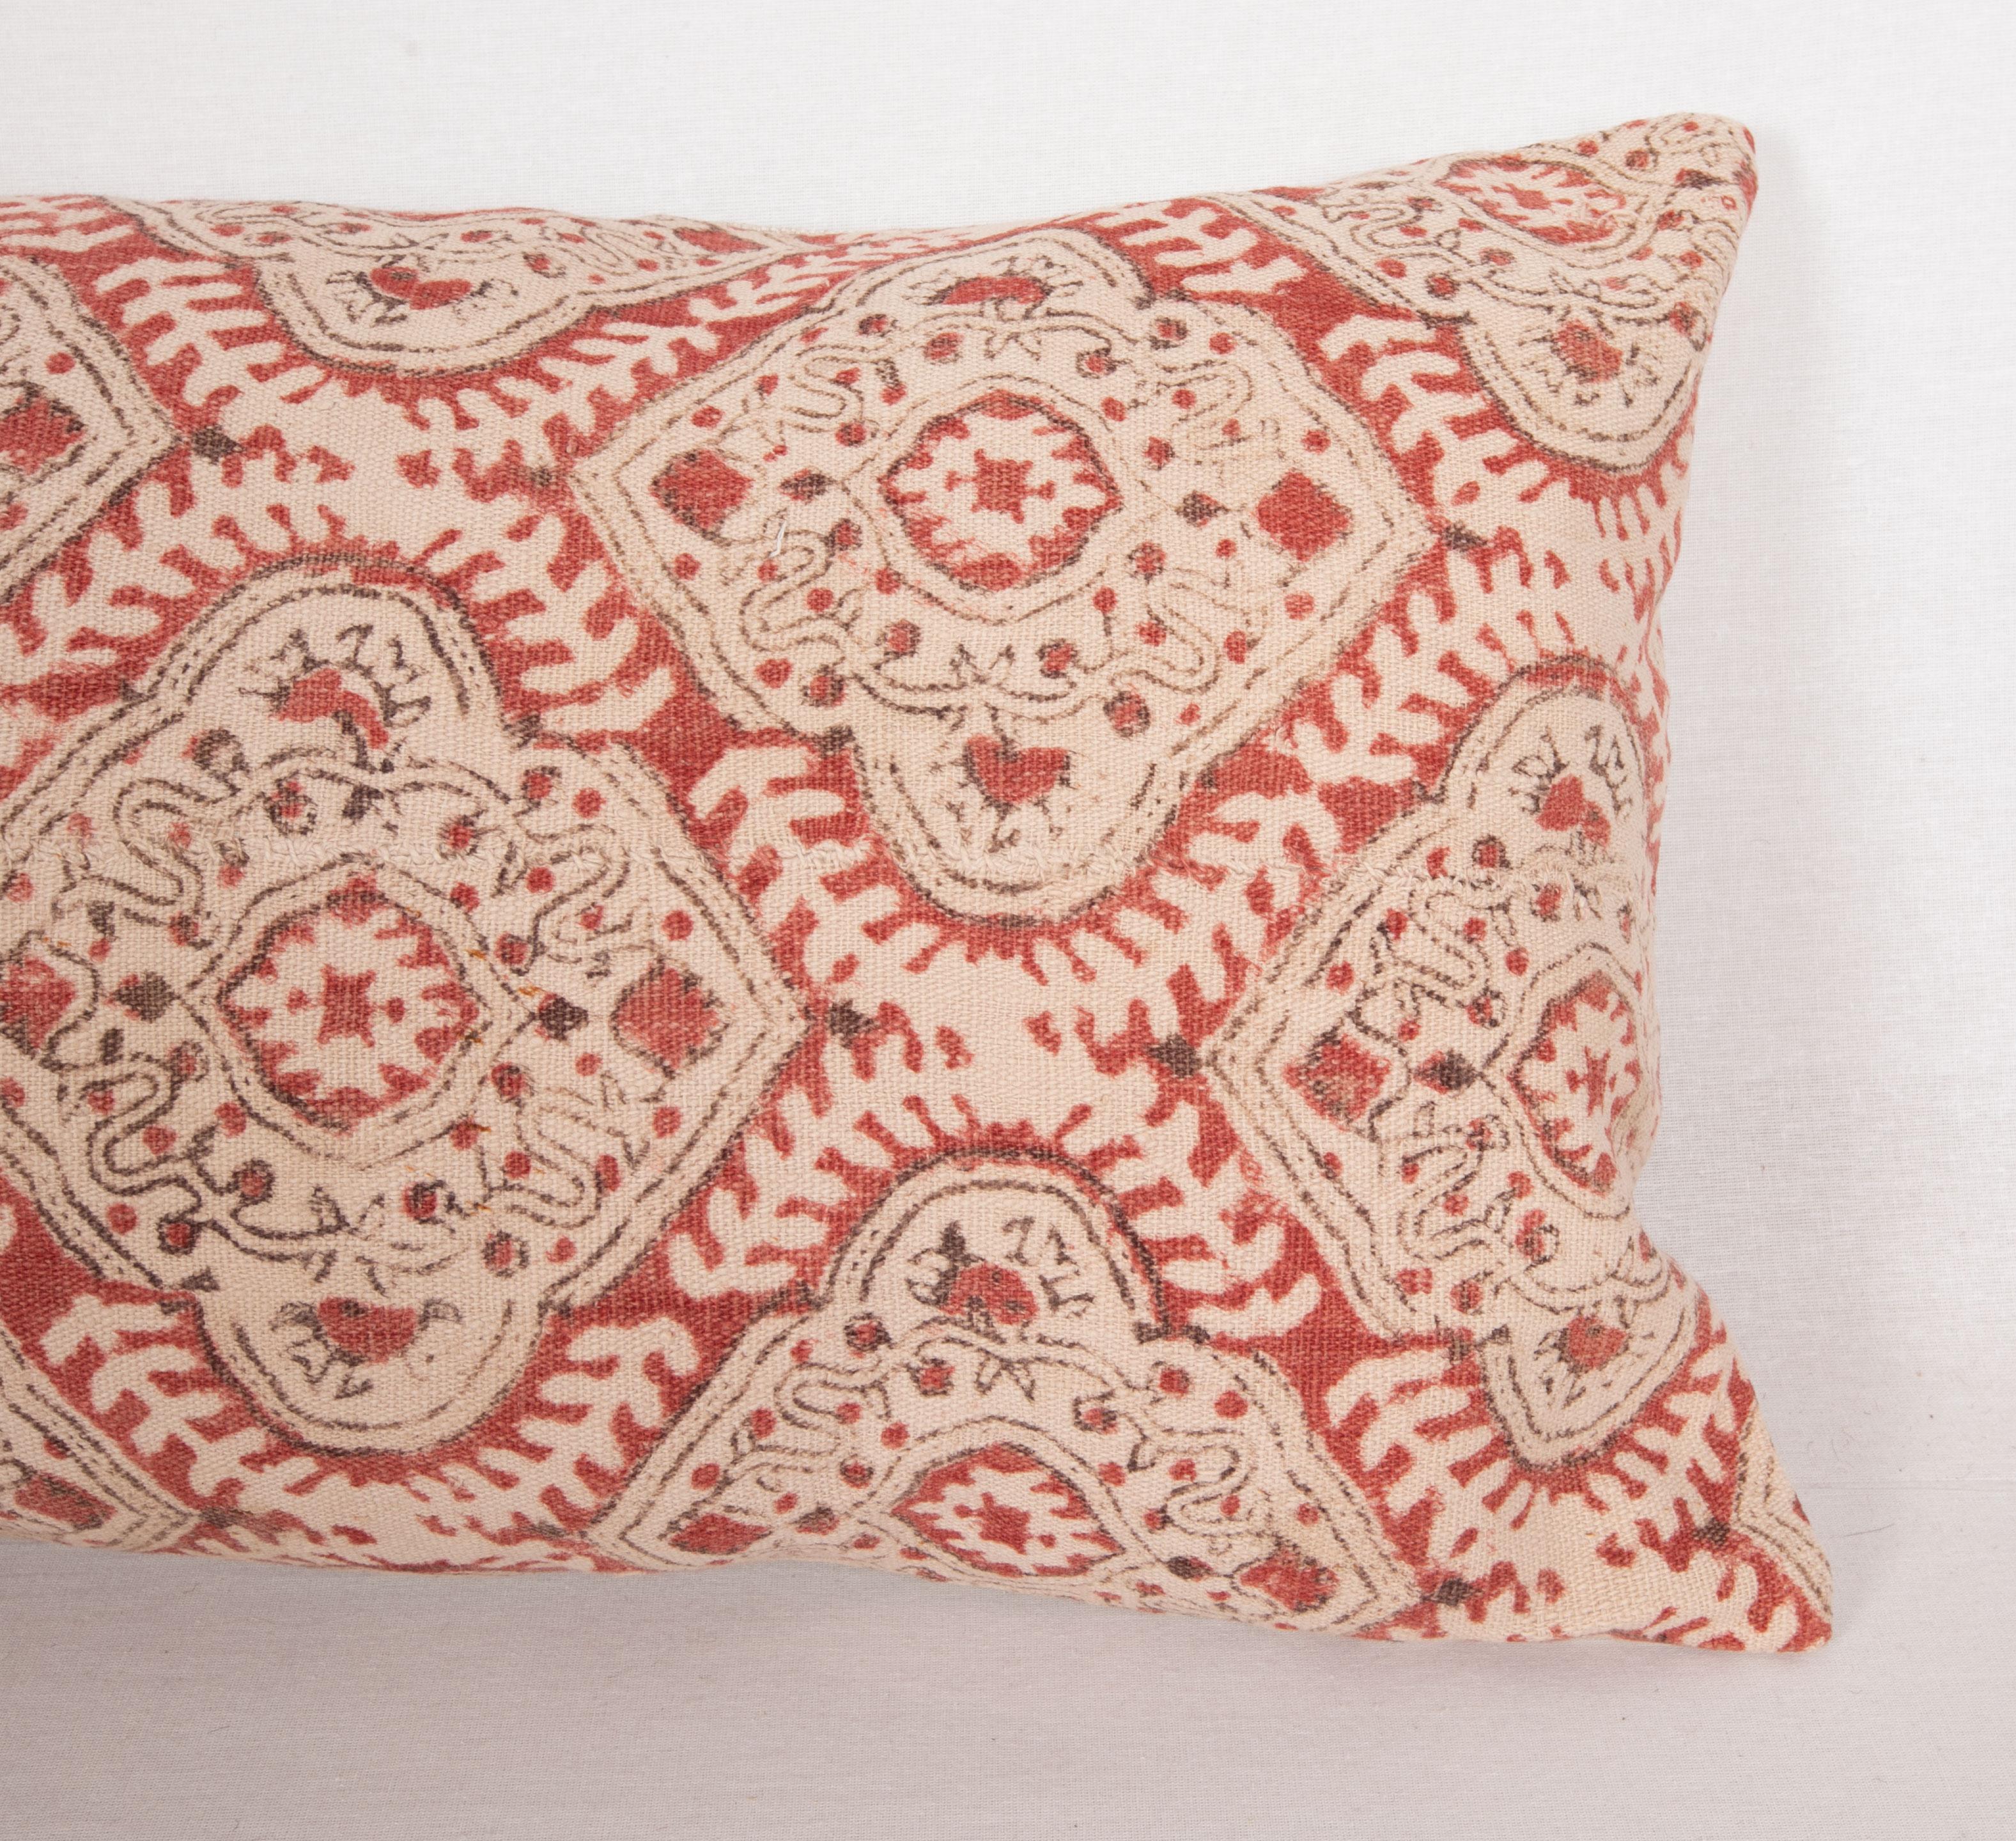 Rustic Block Printed Cotton Pillow Cover, Uzbekistan, 1930s For Sale